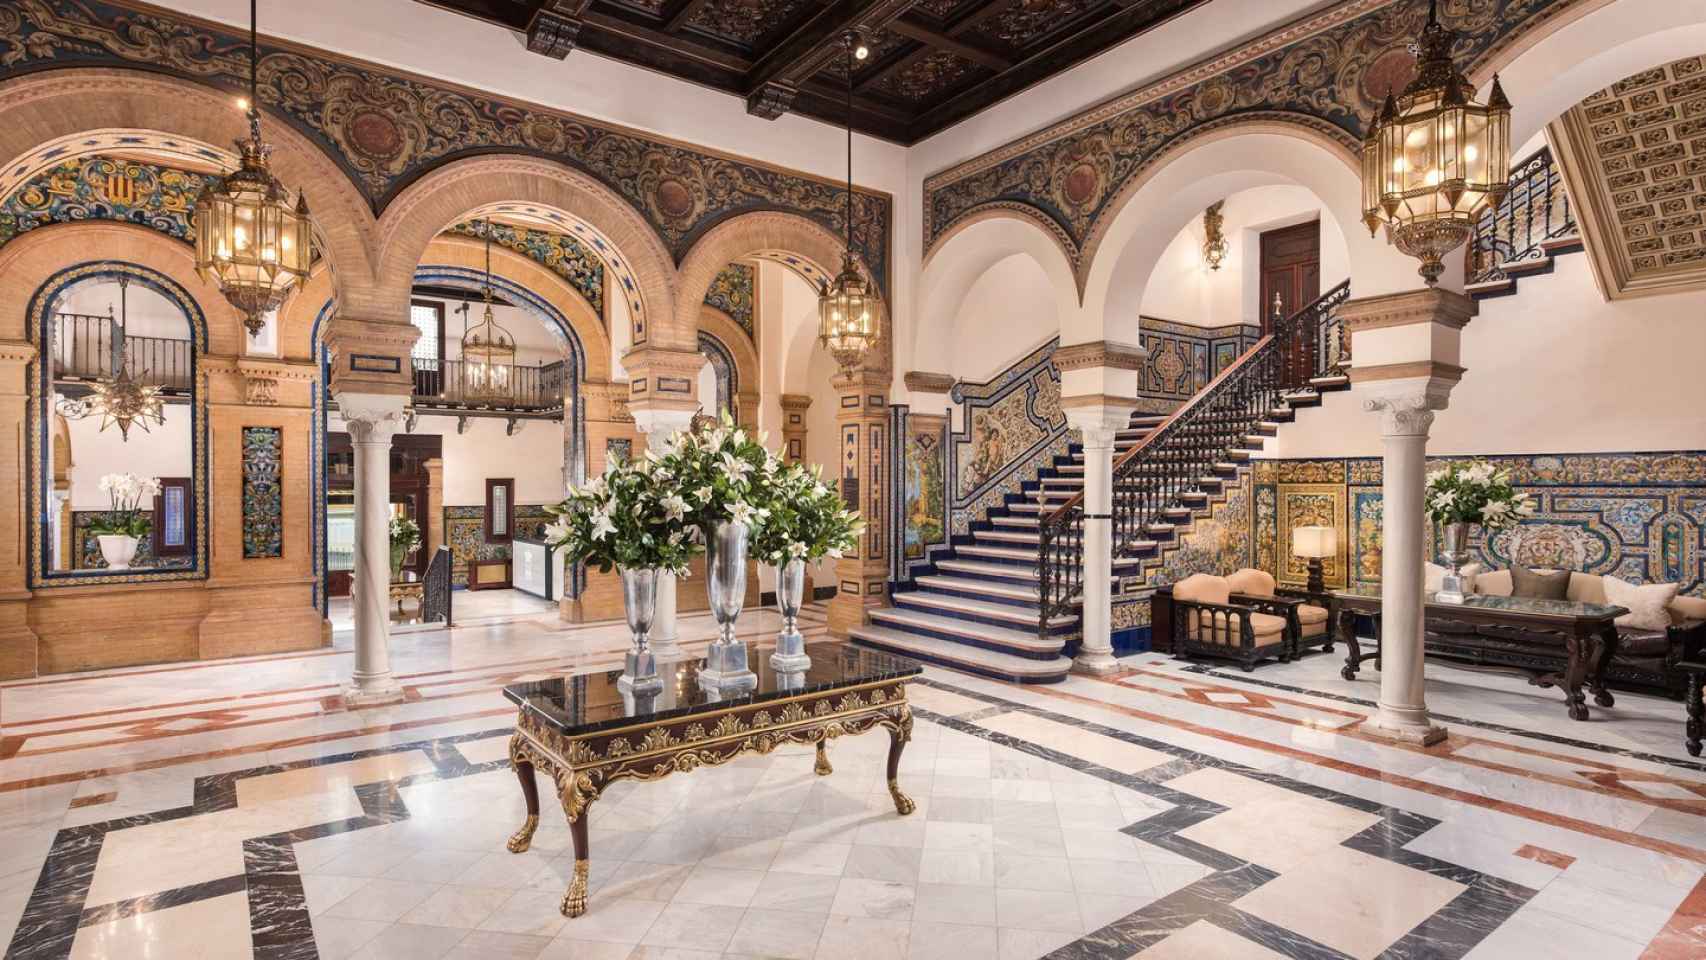 El 'lobby' del hotel está decorado con mosaicos mozárabes.